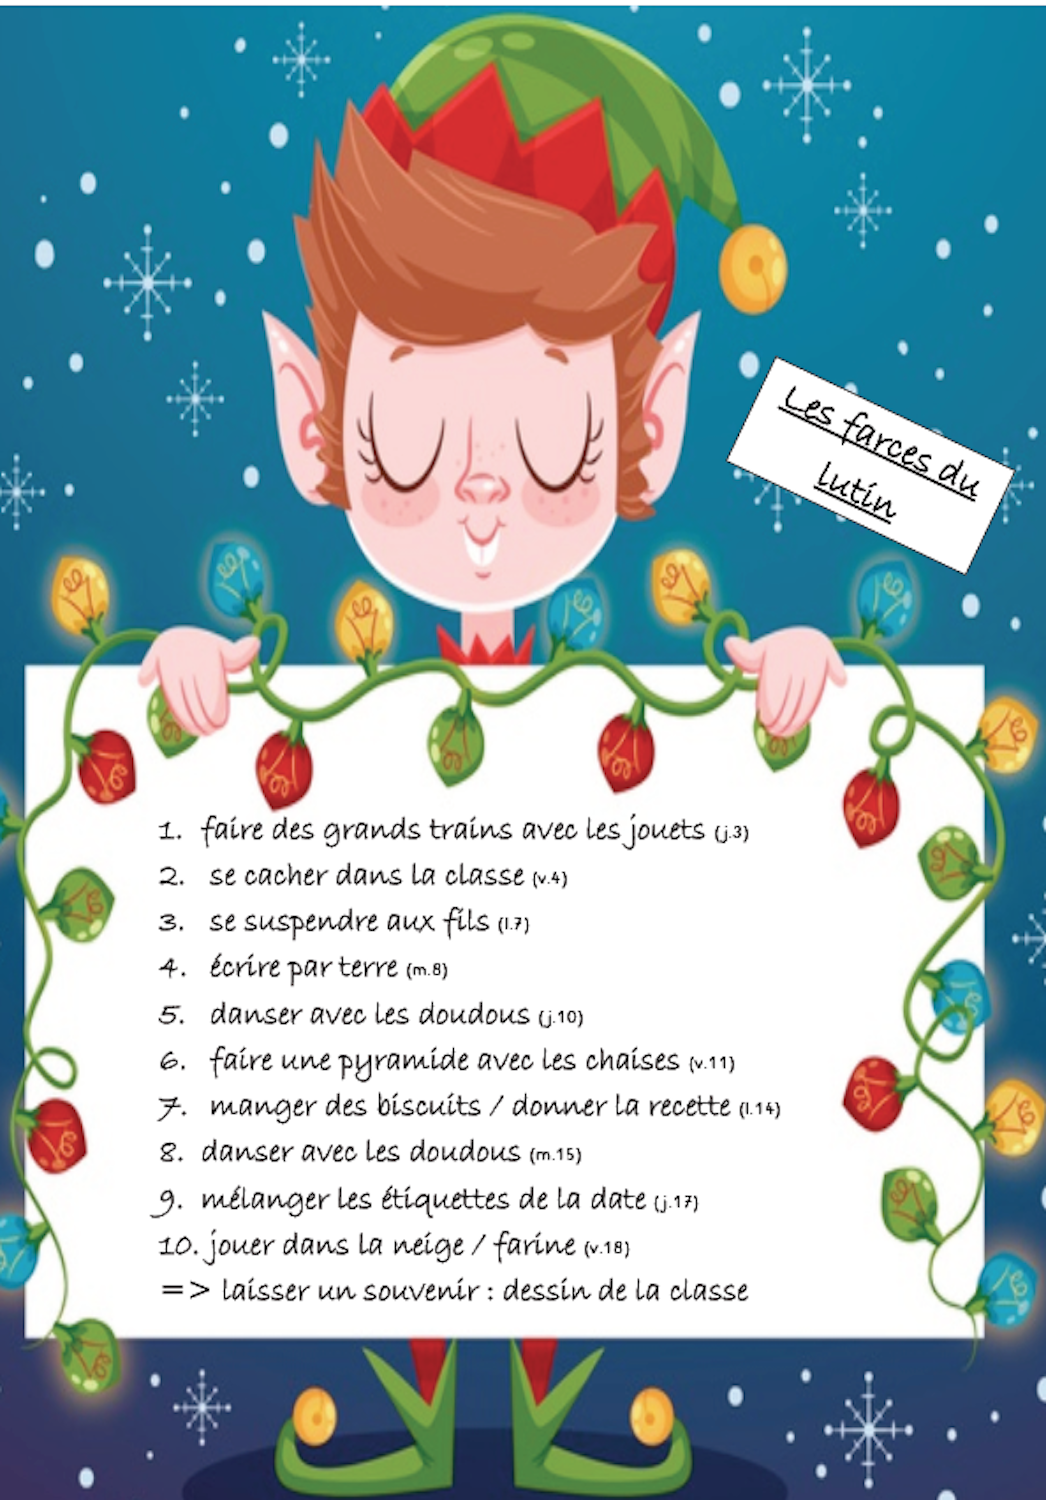 Elfi le lutin farceur (raconter et chanter pour des élèves de maternelle)  (French Edition)